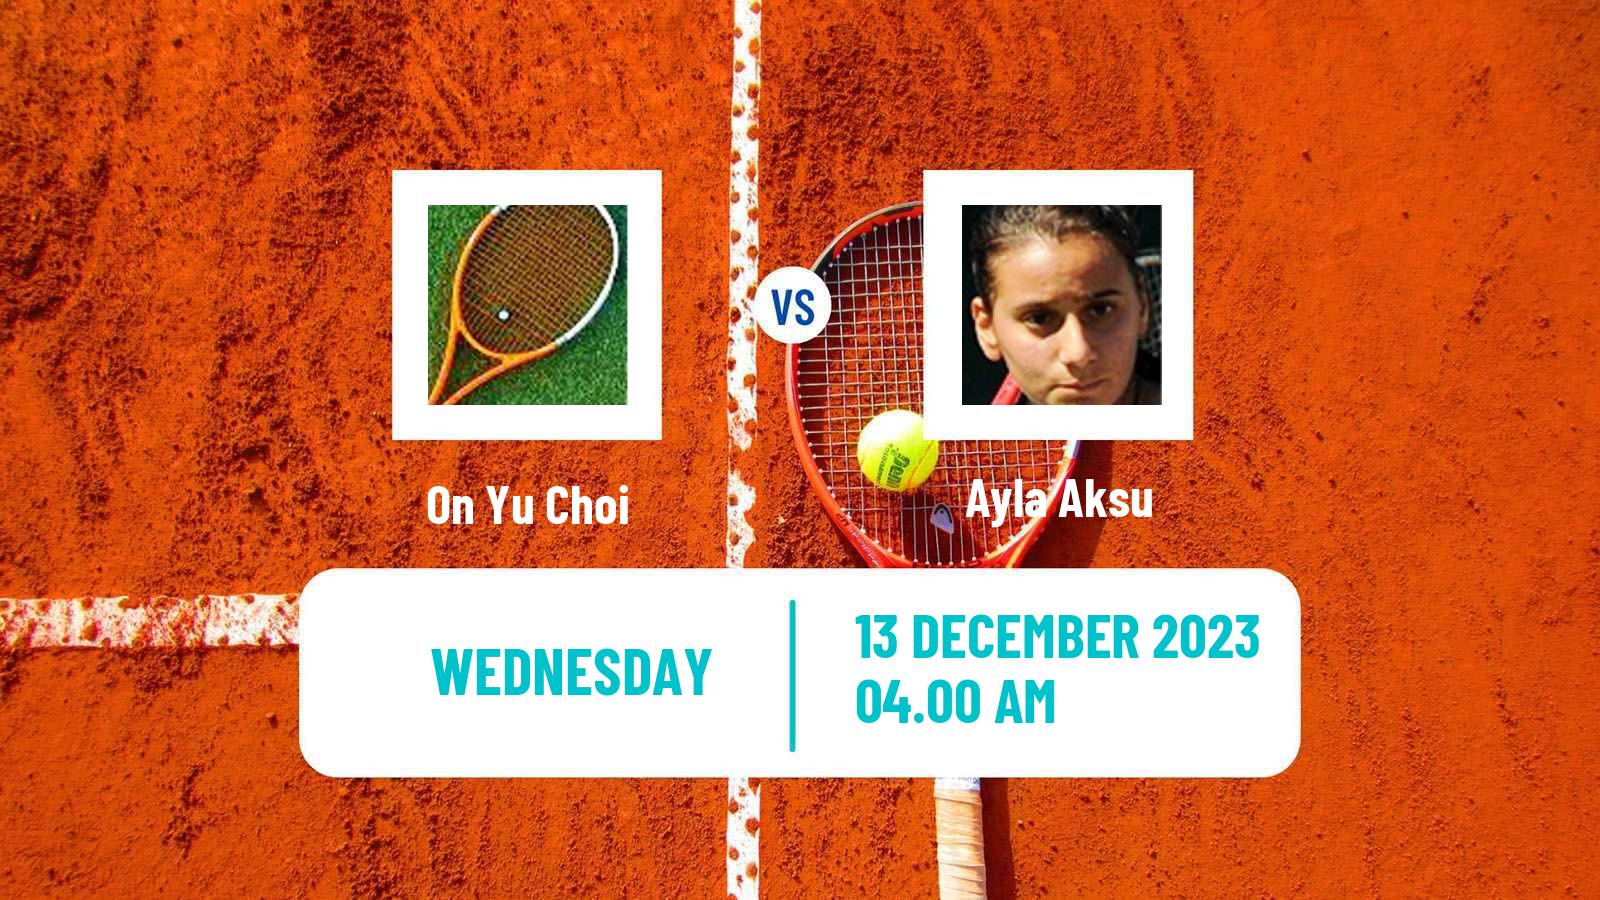 Tennis ITF W25 Sharm Elsheikh 6 Women 2023 On Yu Choi - Ayla Aksu